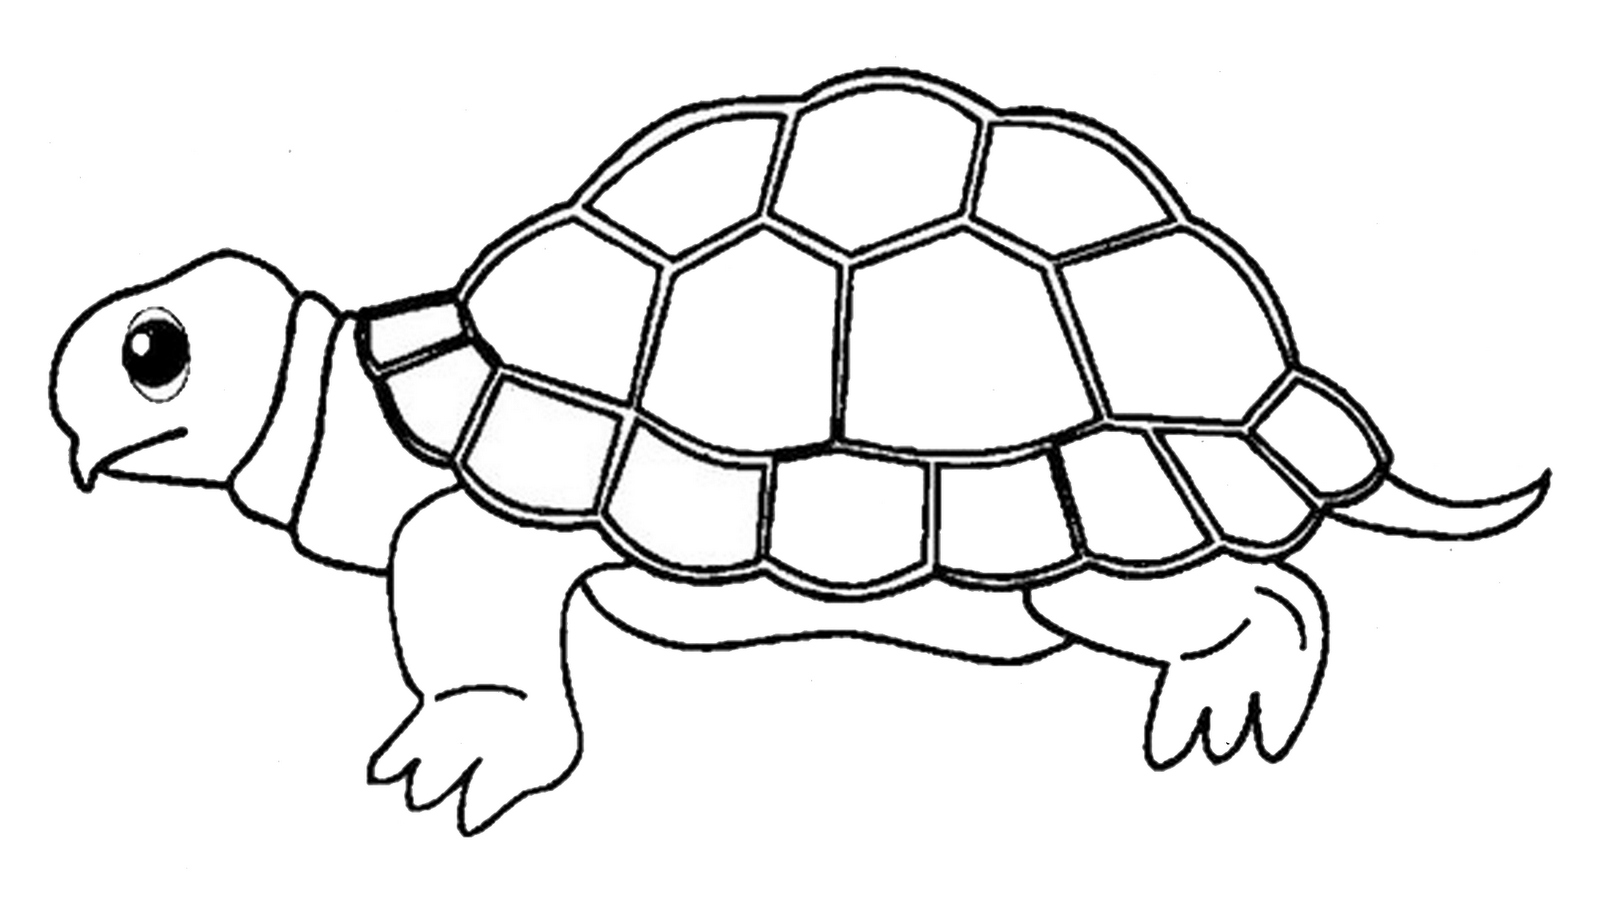 Распечатать картинку черепаха. Черепаха раскраска для детей. Черепаха трафарет для рисования. Трафарет черепахи для раскрашивания. Черепаха раскраска для детей 3-4.